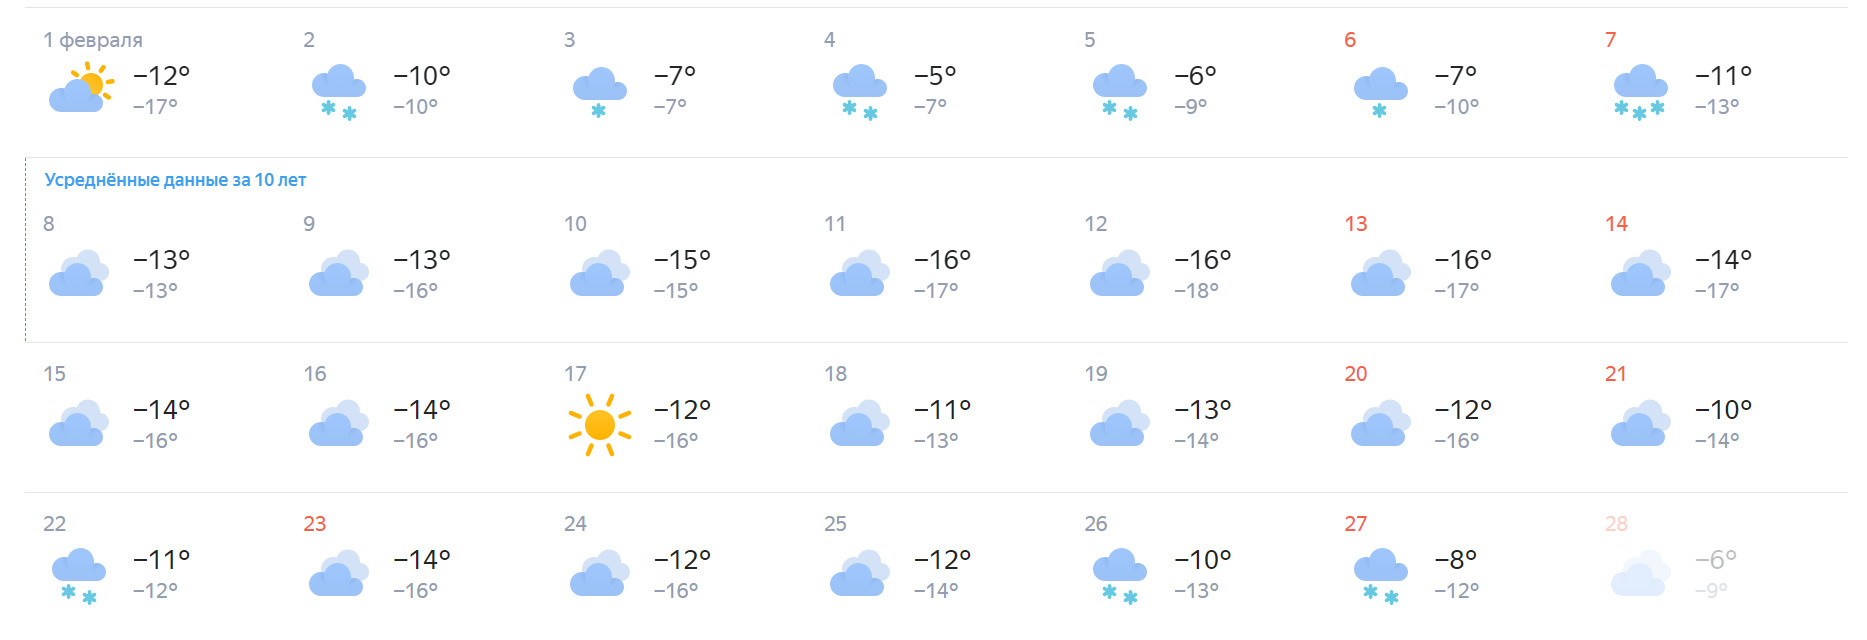 По прогнозам сервиса «Яндекс. Погода», единственный солнечный день будет 17 февраля